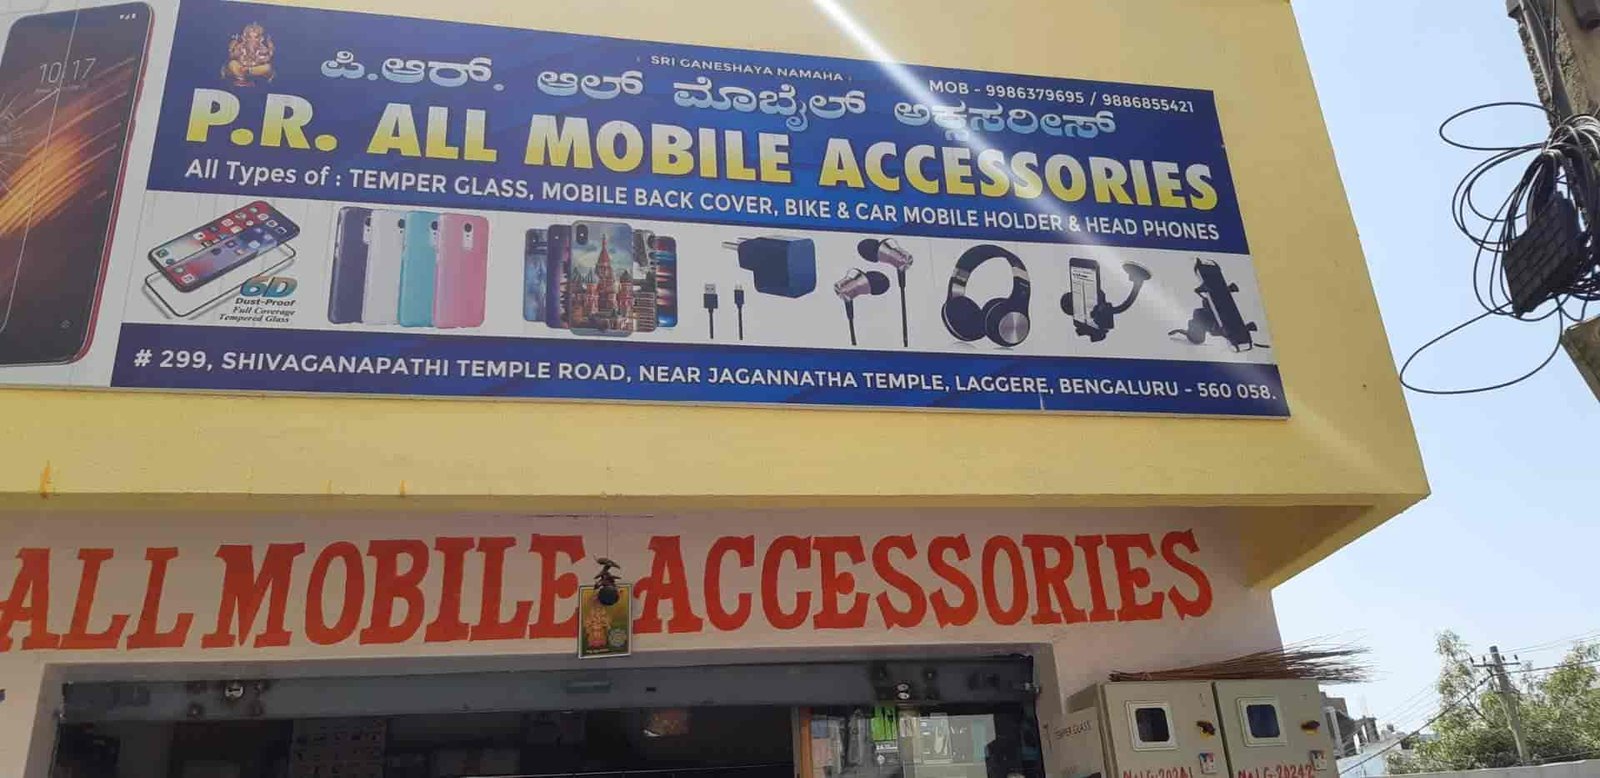 PR All Mobile Accessories